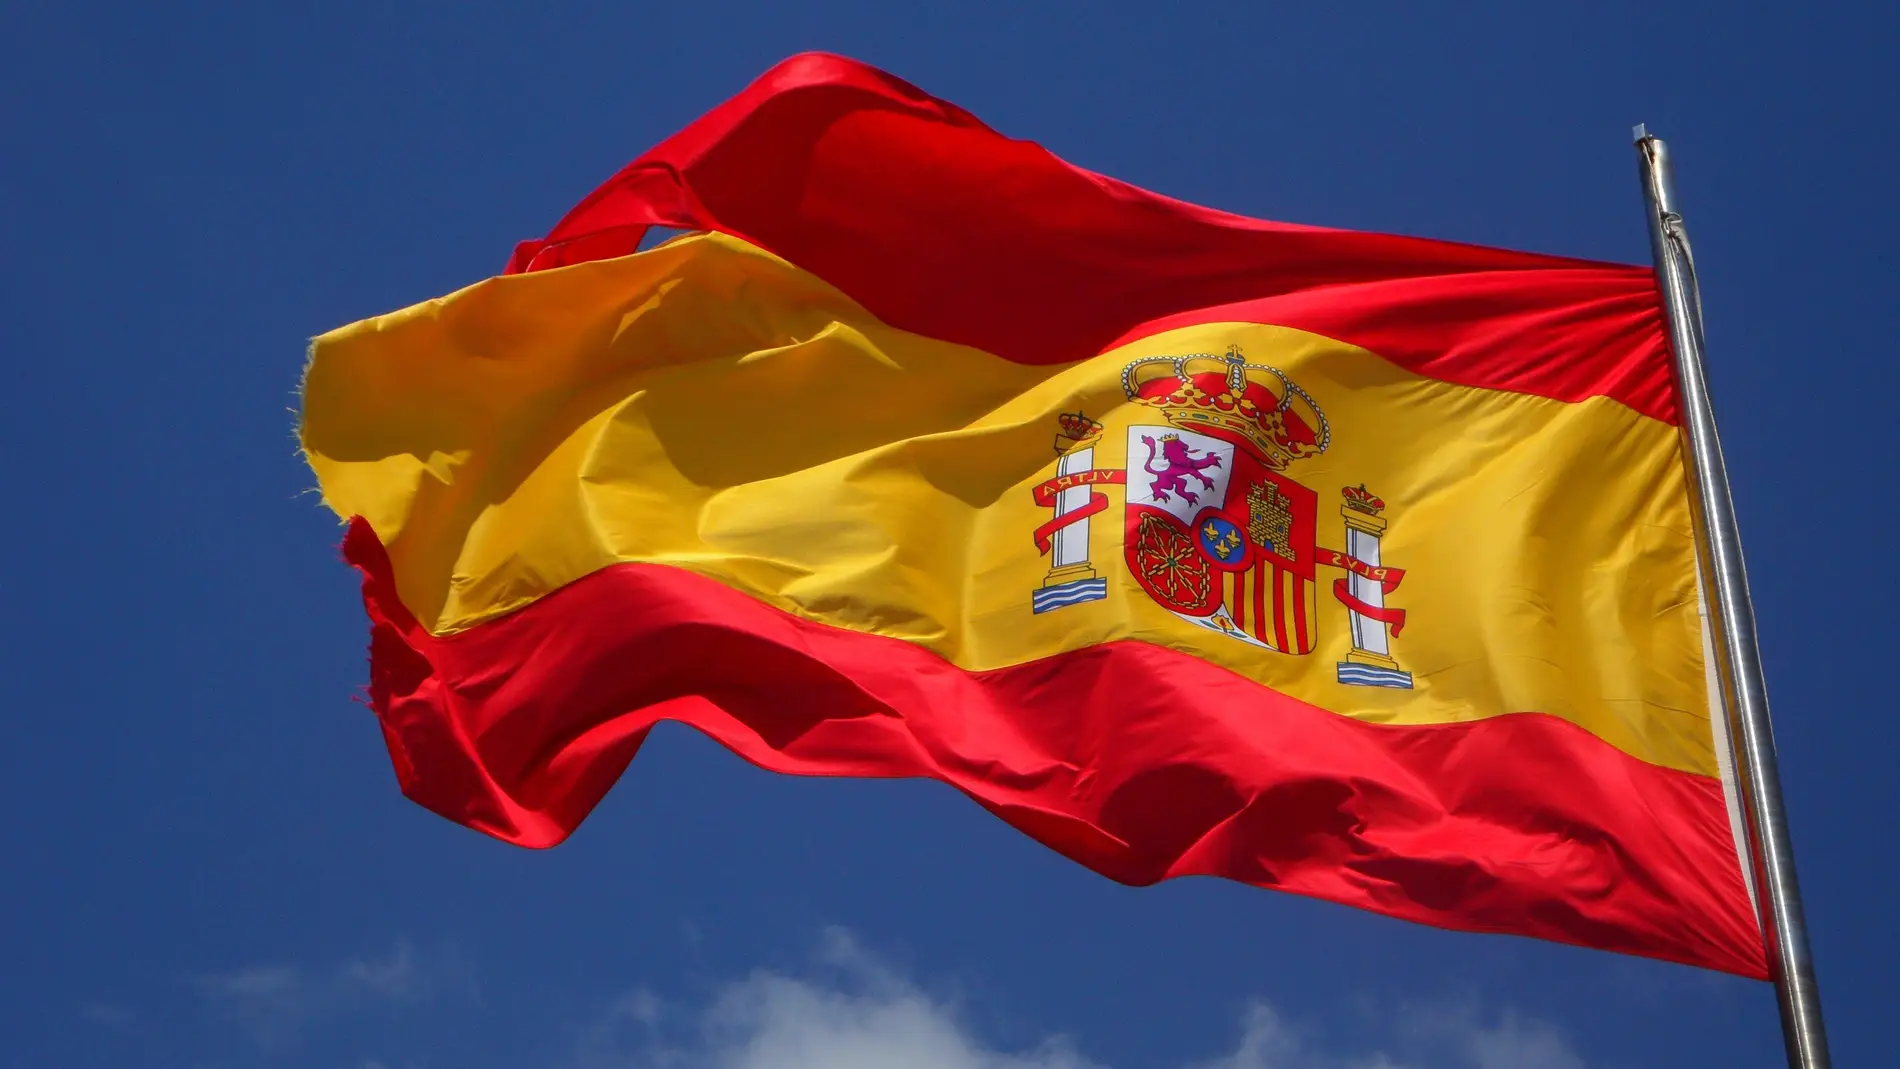 Los padres de los alumnos expulsados piden el despido de la profesora que no quiso dar clase con la bandera de España